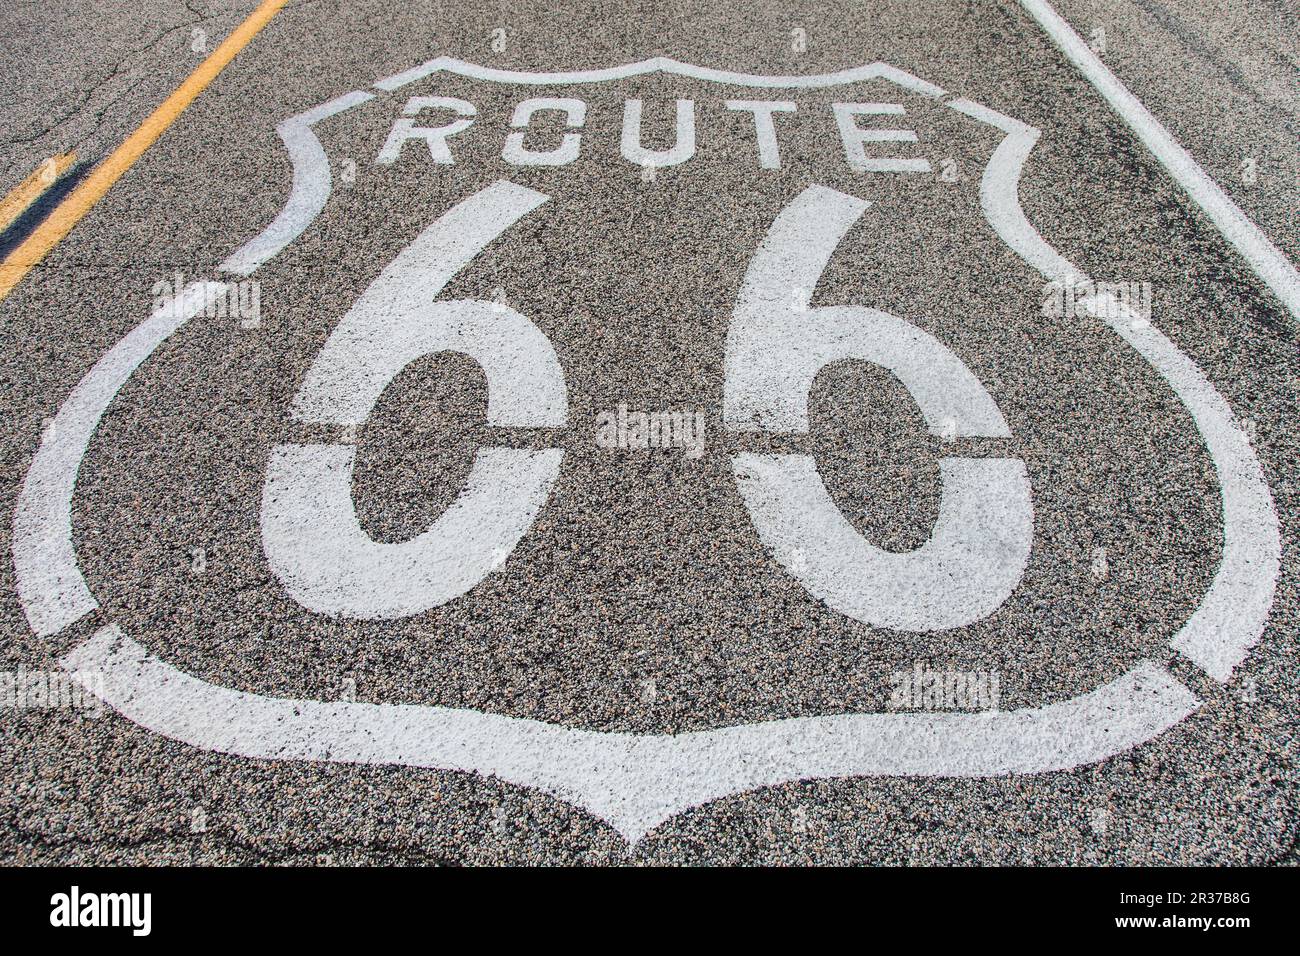 Célèbre Route 66 vue sur la route dans le désert californien Banque D'Images